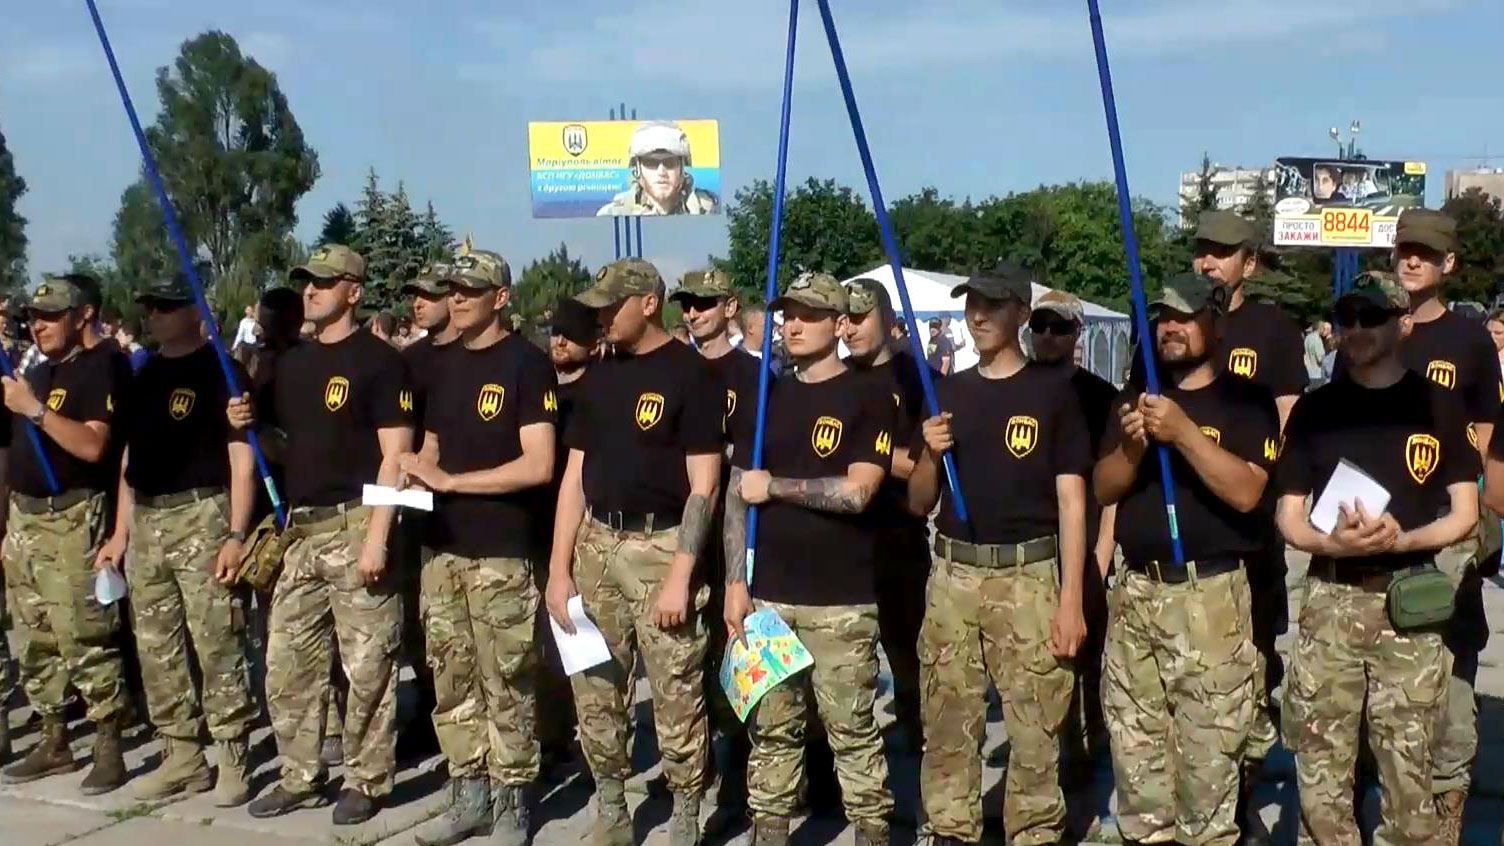 Вторая годовщина батальона "Донбасс": как бойцы отметили дату